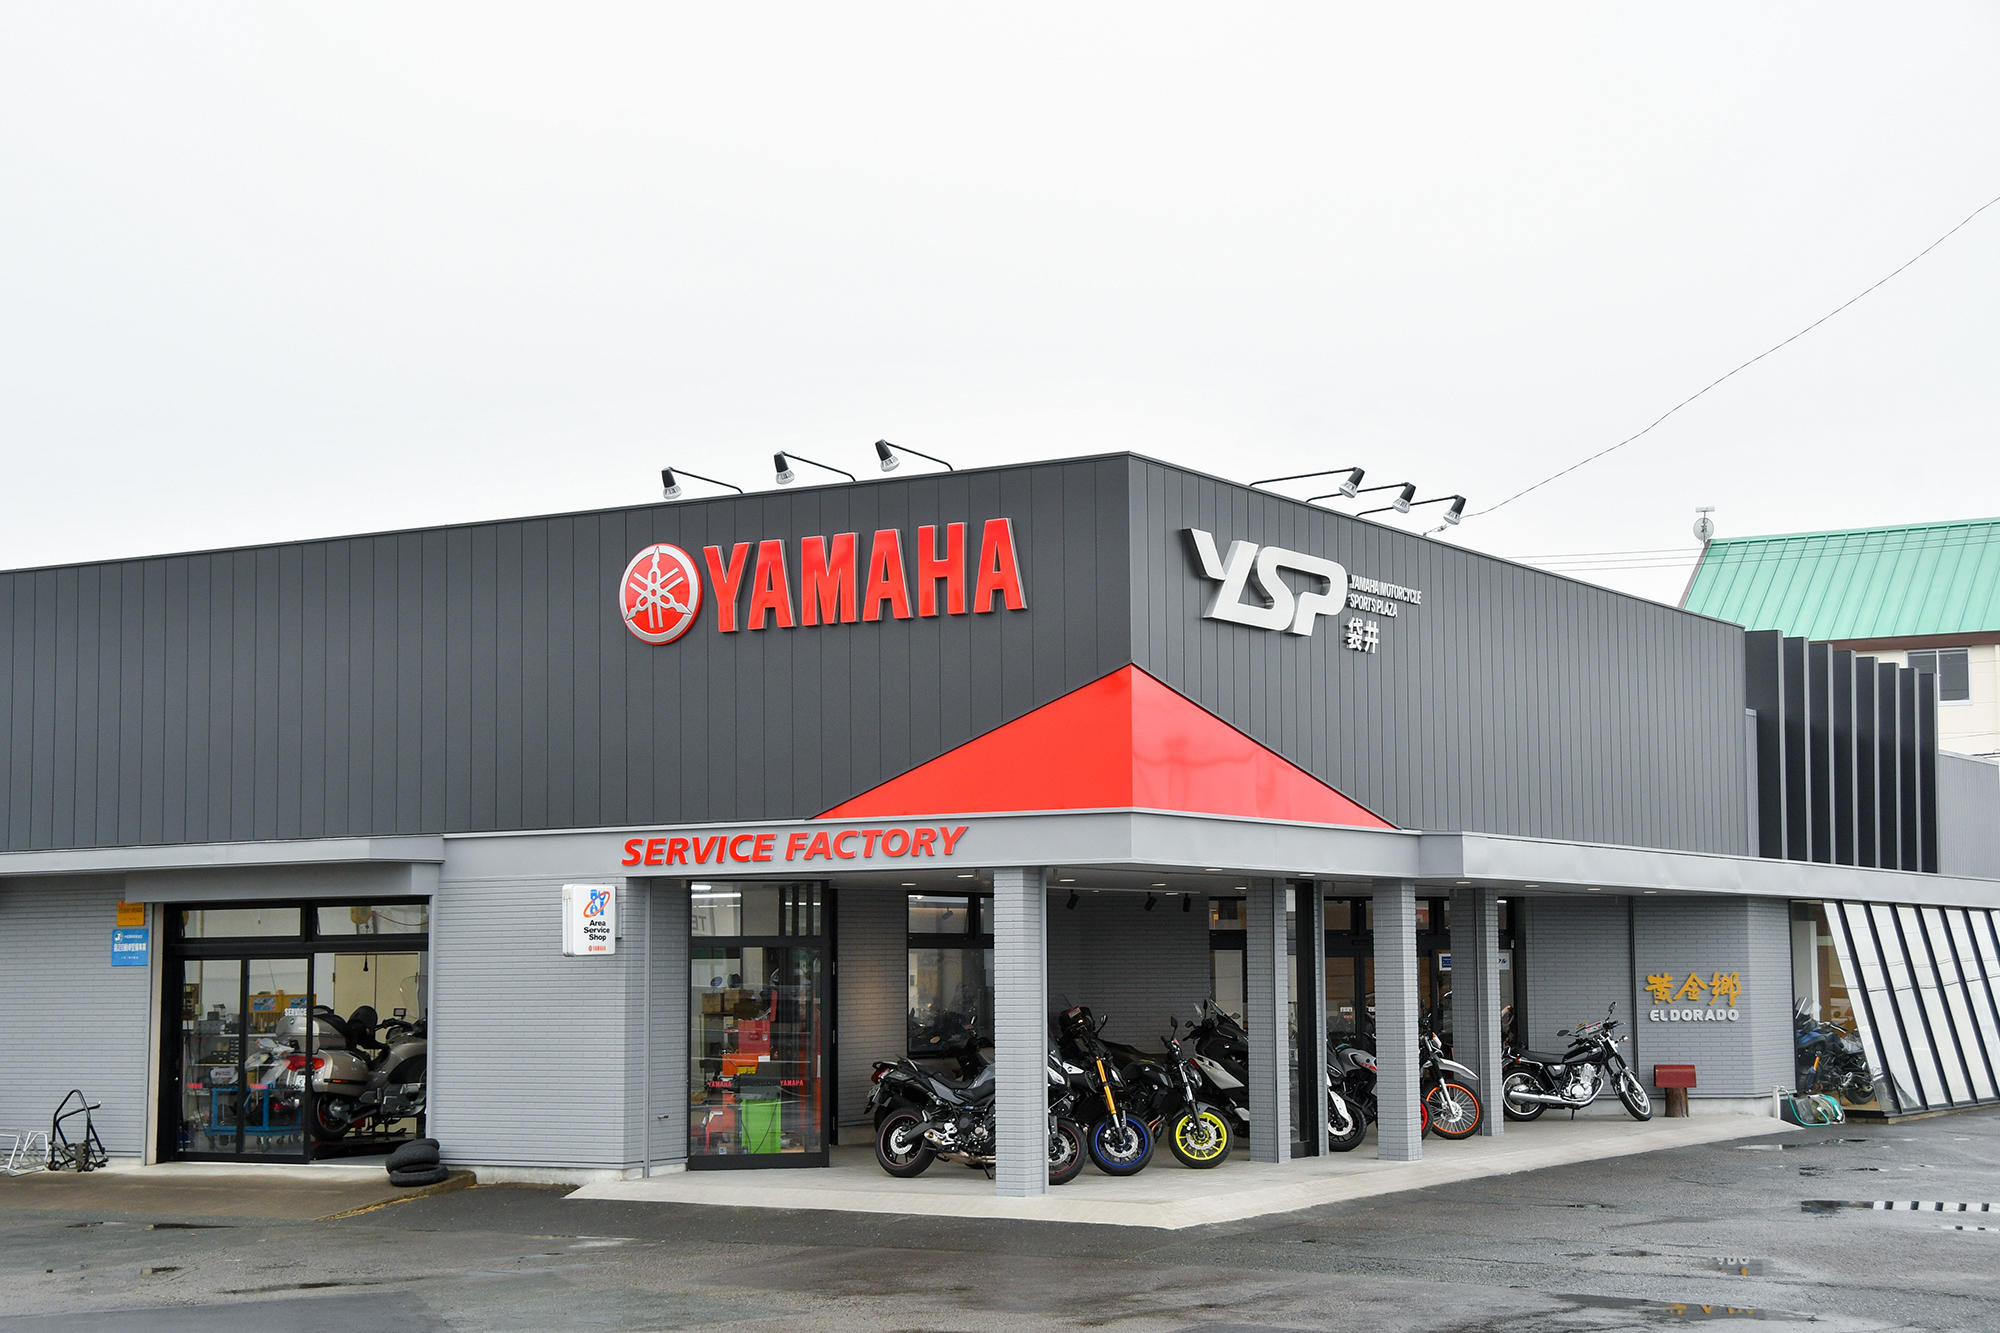 ヤマハを愛するすべてのお客さまに「最高のブランド体験」をお約束するヤマハスポーツバイク専門店「YSP」